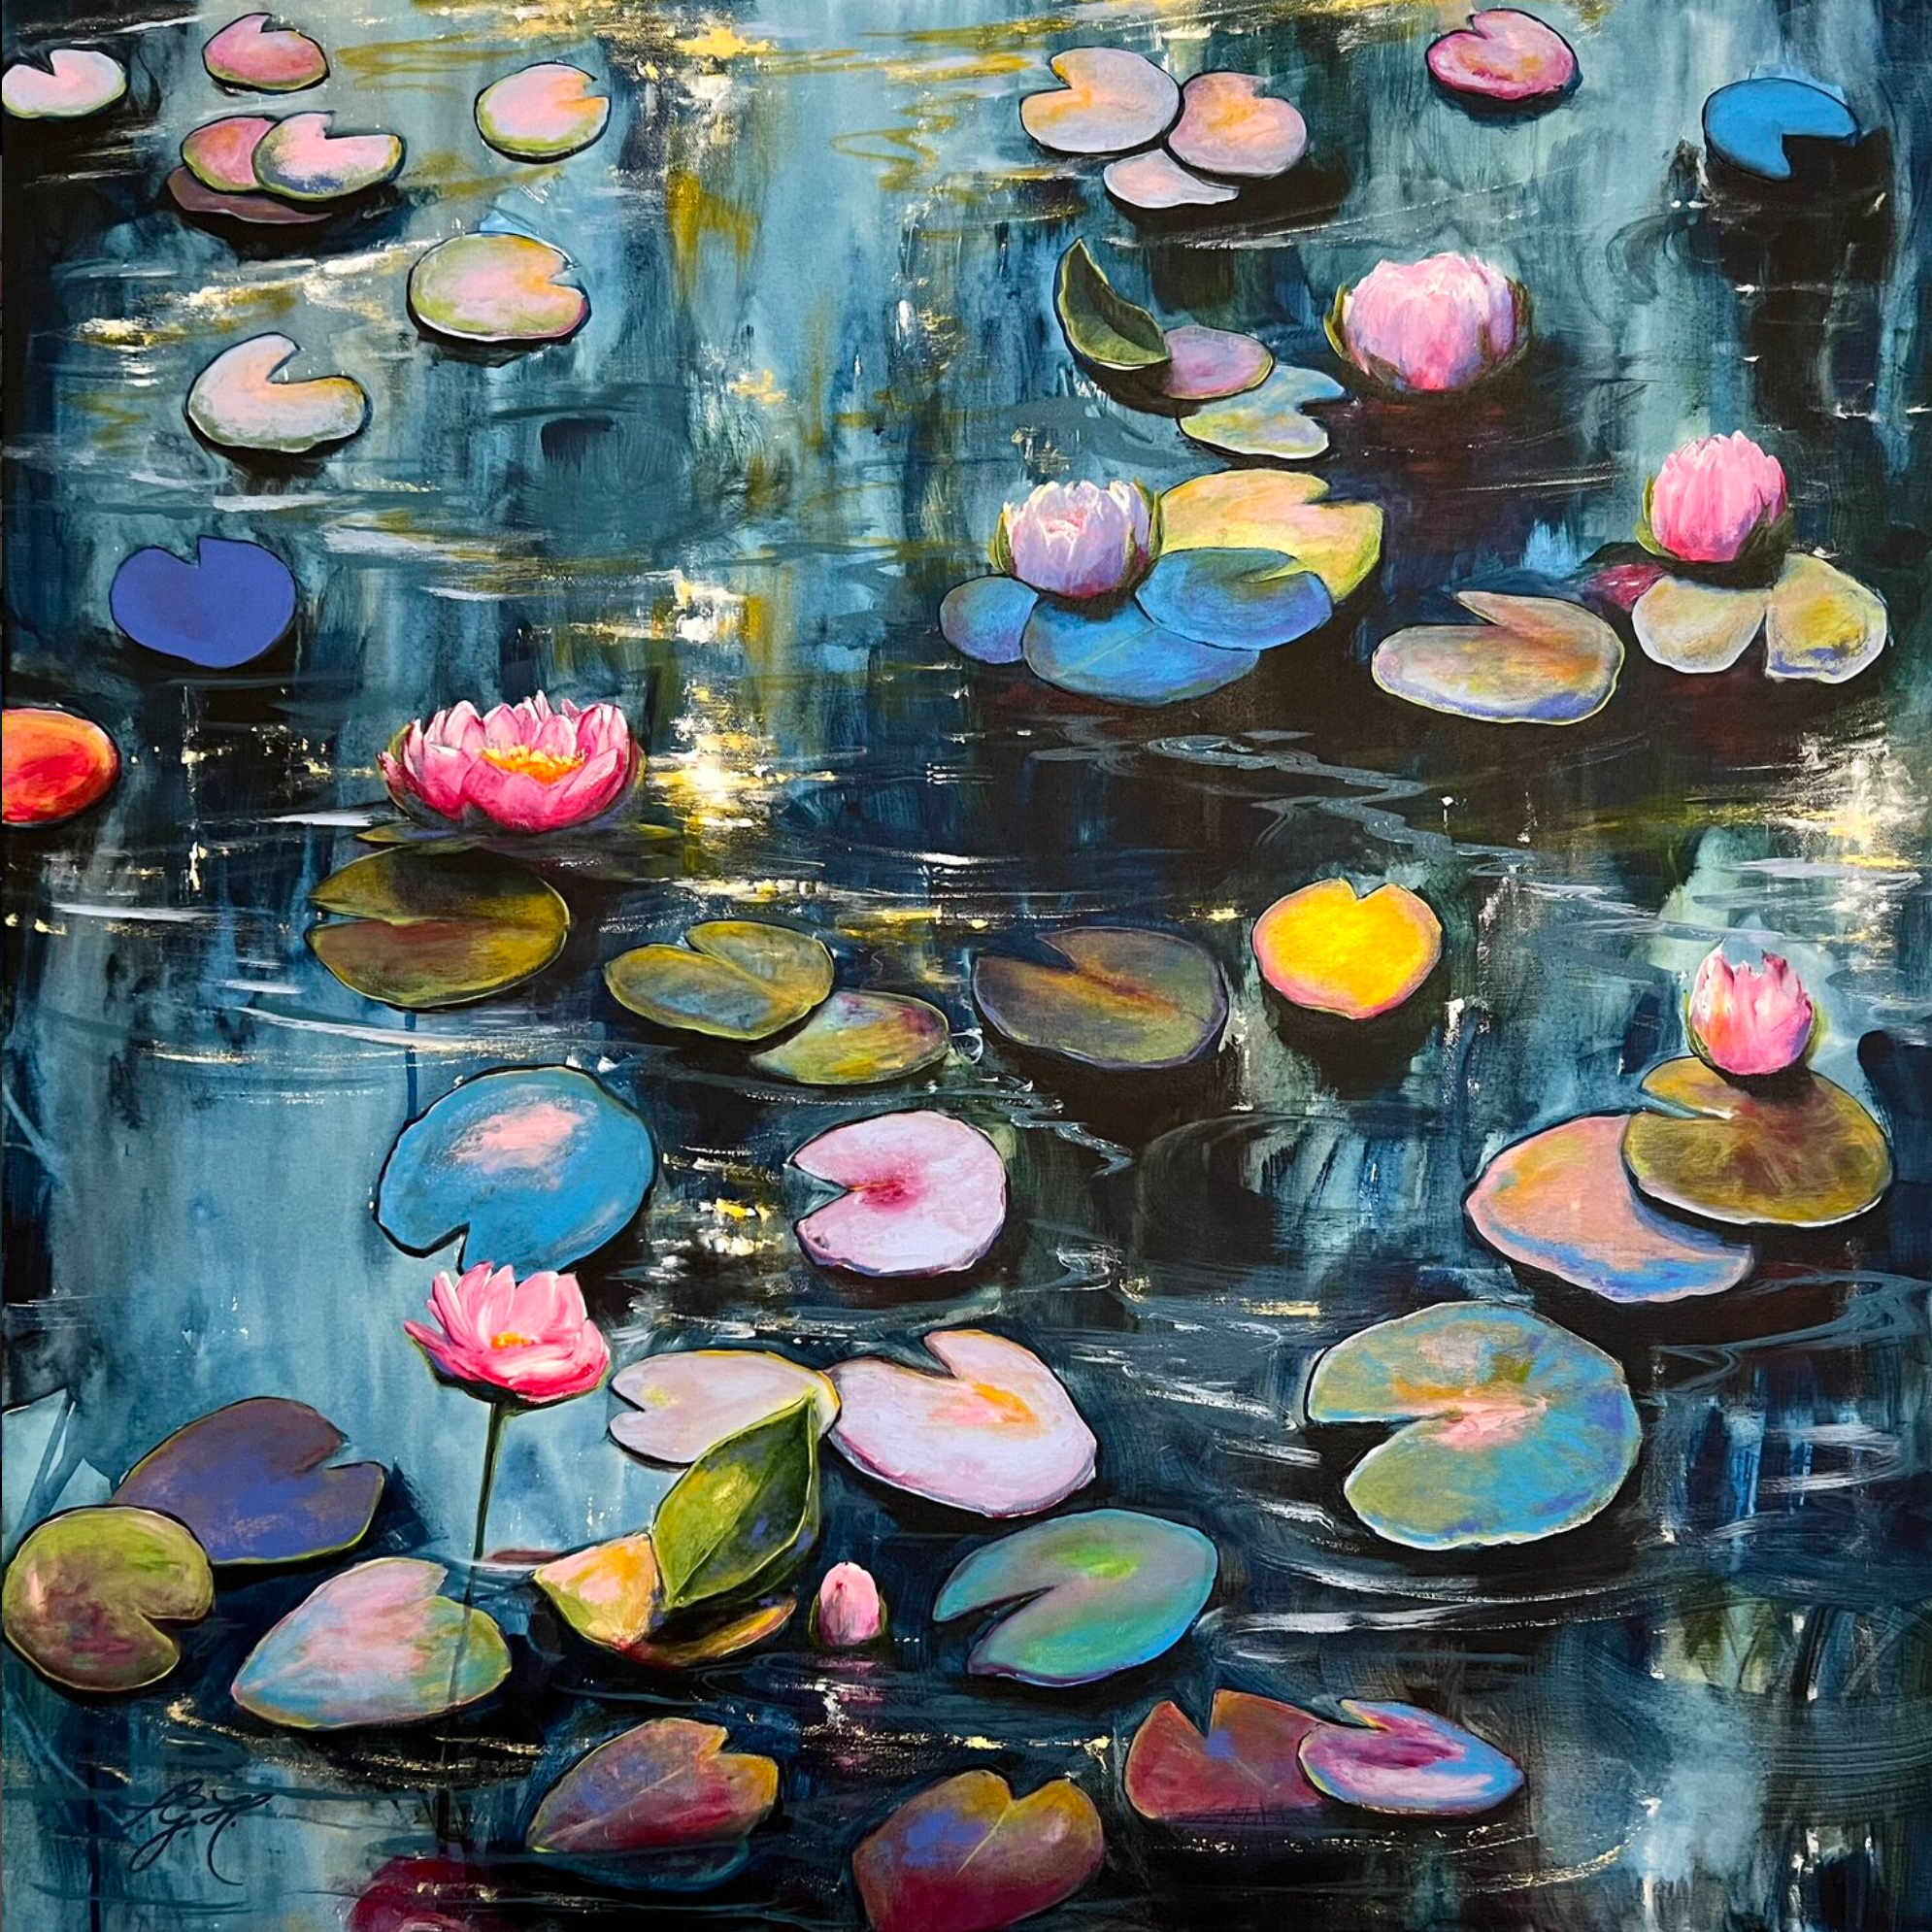 Il dipinto colorato "Happy At The Pond 4" di Sandra Gebhardt-Hoepfner mostra un sole che tramonta lentamente, riflesso di rosa e arancione caldo nell'acqua. I fiori bianchi e rosa si adagiano rilassati sulle foglie sonnolente, colorate e verdi. È così rilassante guardarli e osservare il dolce movimento dell'acqua.